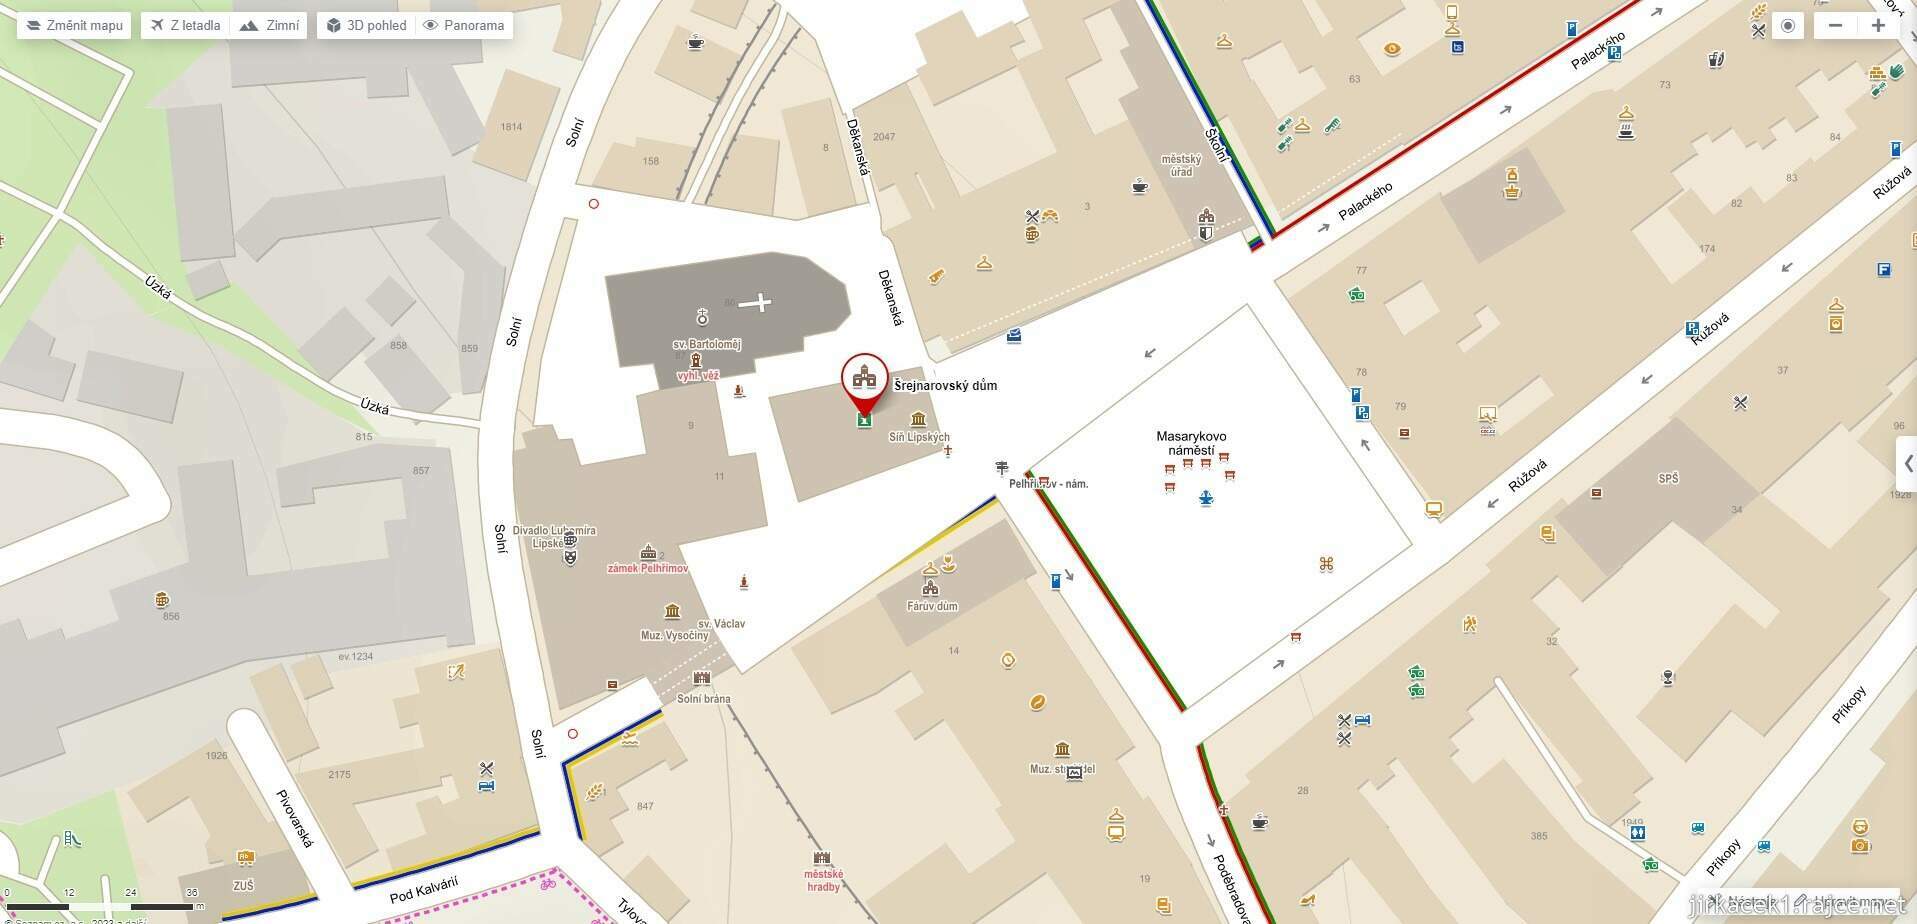 Pelhřimov - centrum města - mapa